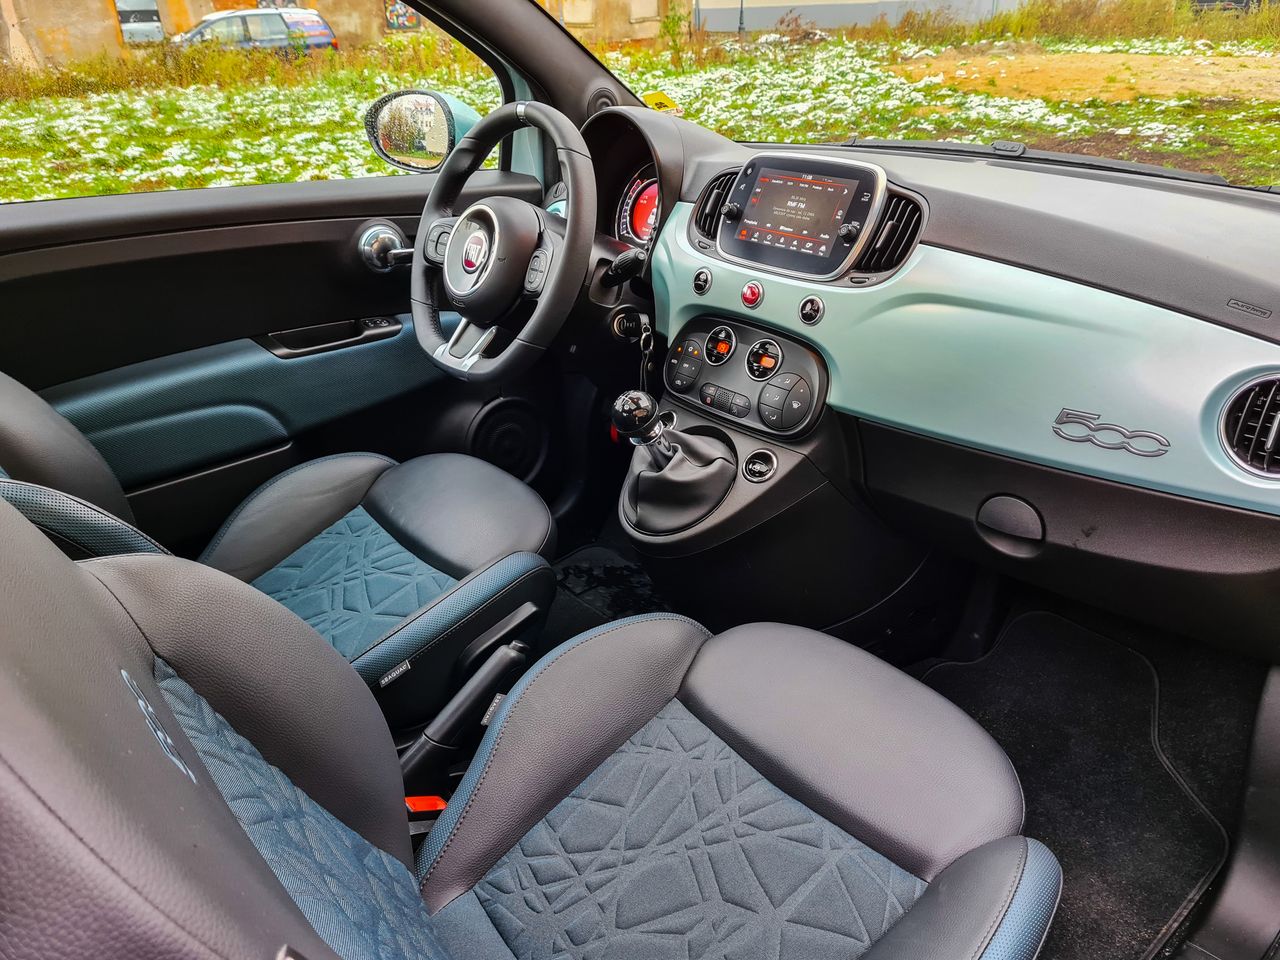 Fiat 500 nie oferuje wielu gadżetów, ale wirtualne zegary i obsługa Android Auto w zupełności wystarczą